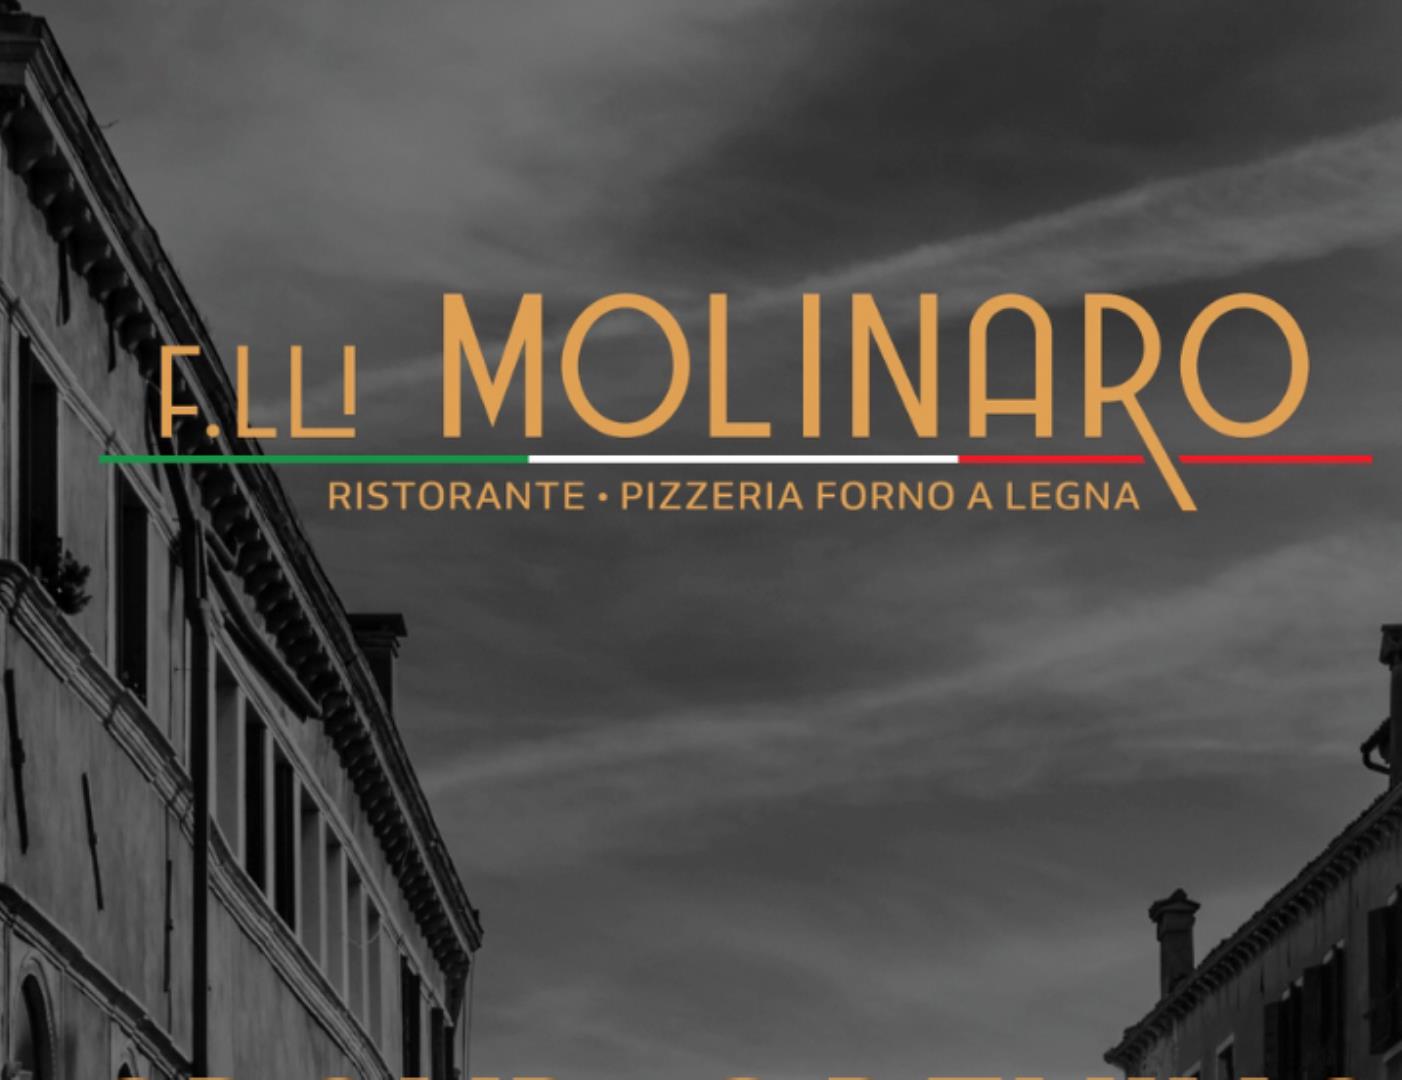 Fratelli Molinaro Ristorante Restaurant - Picture